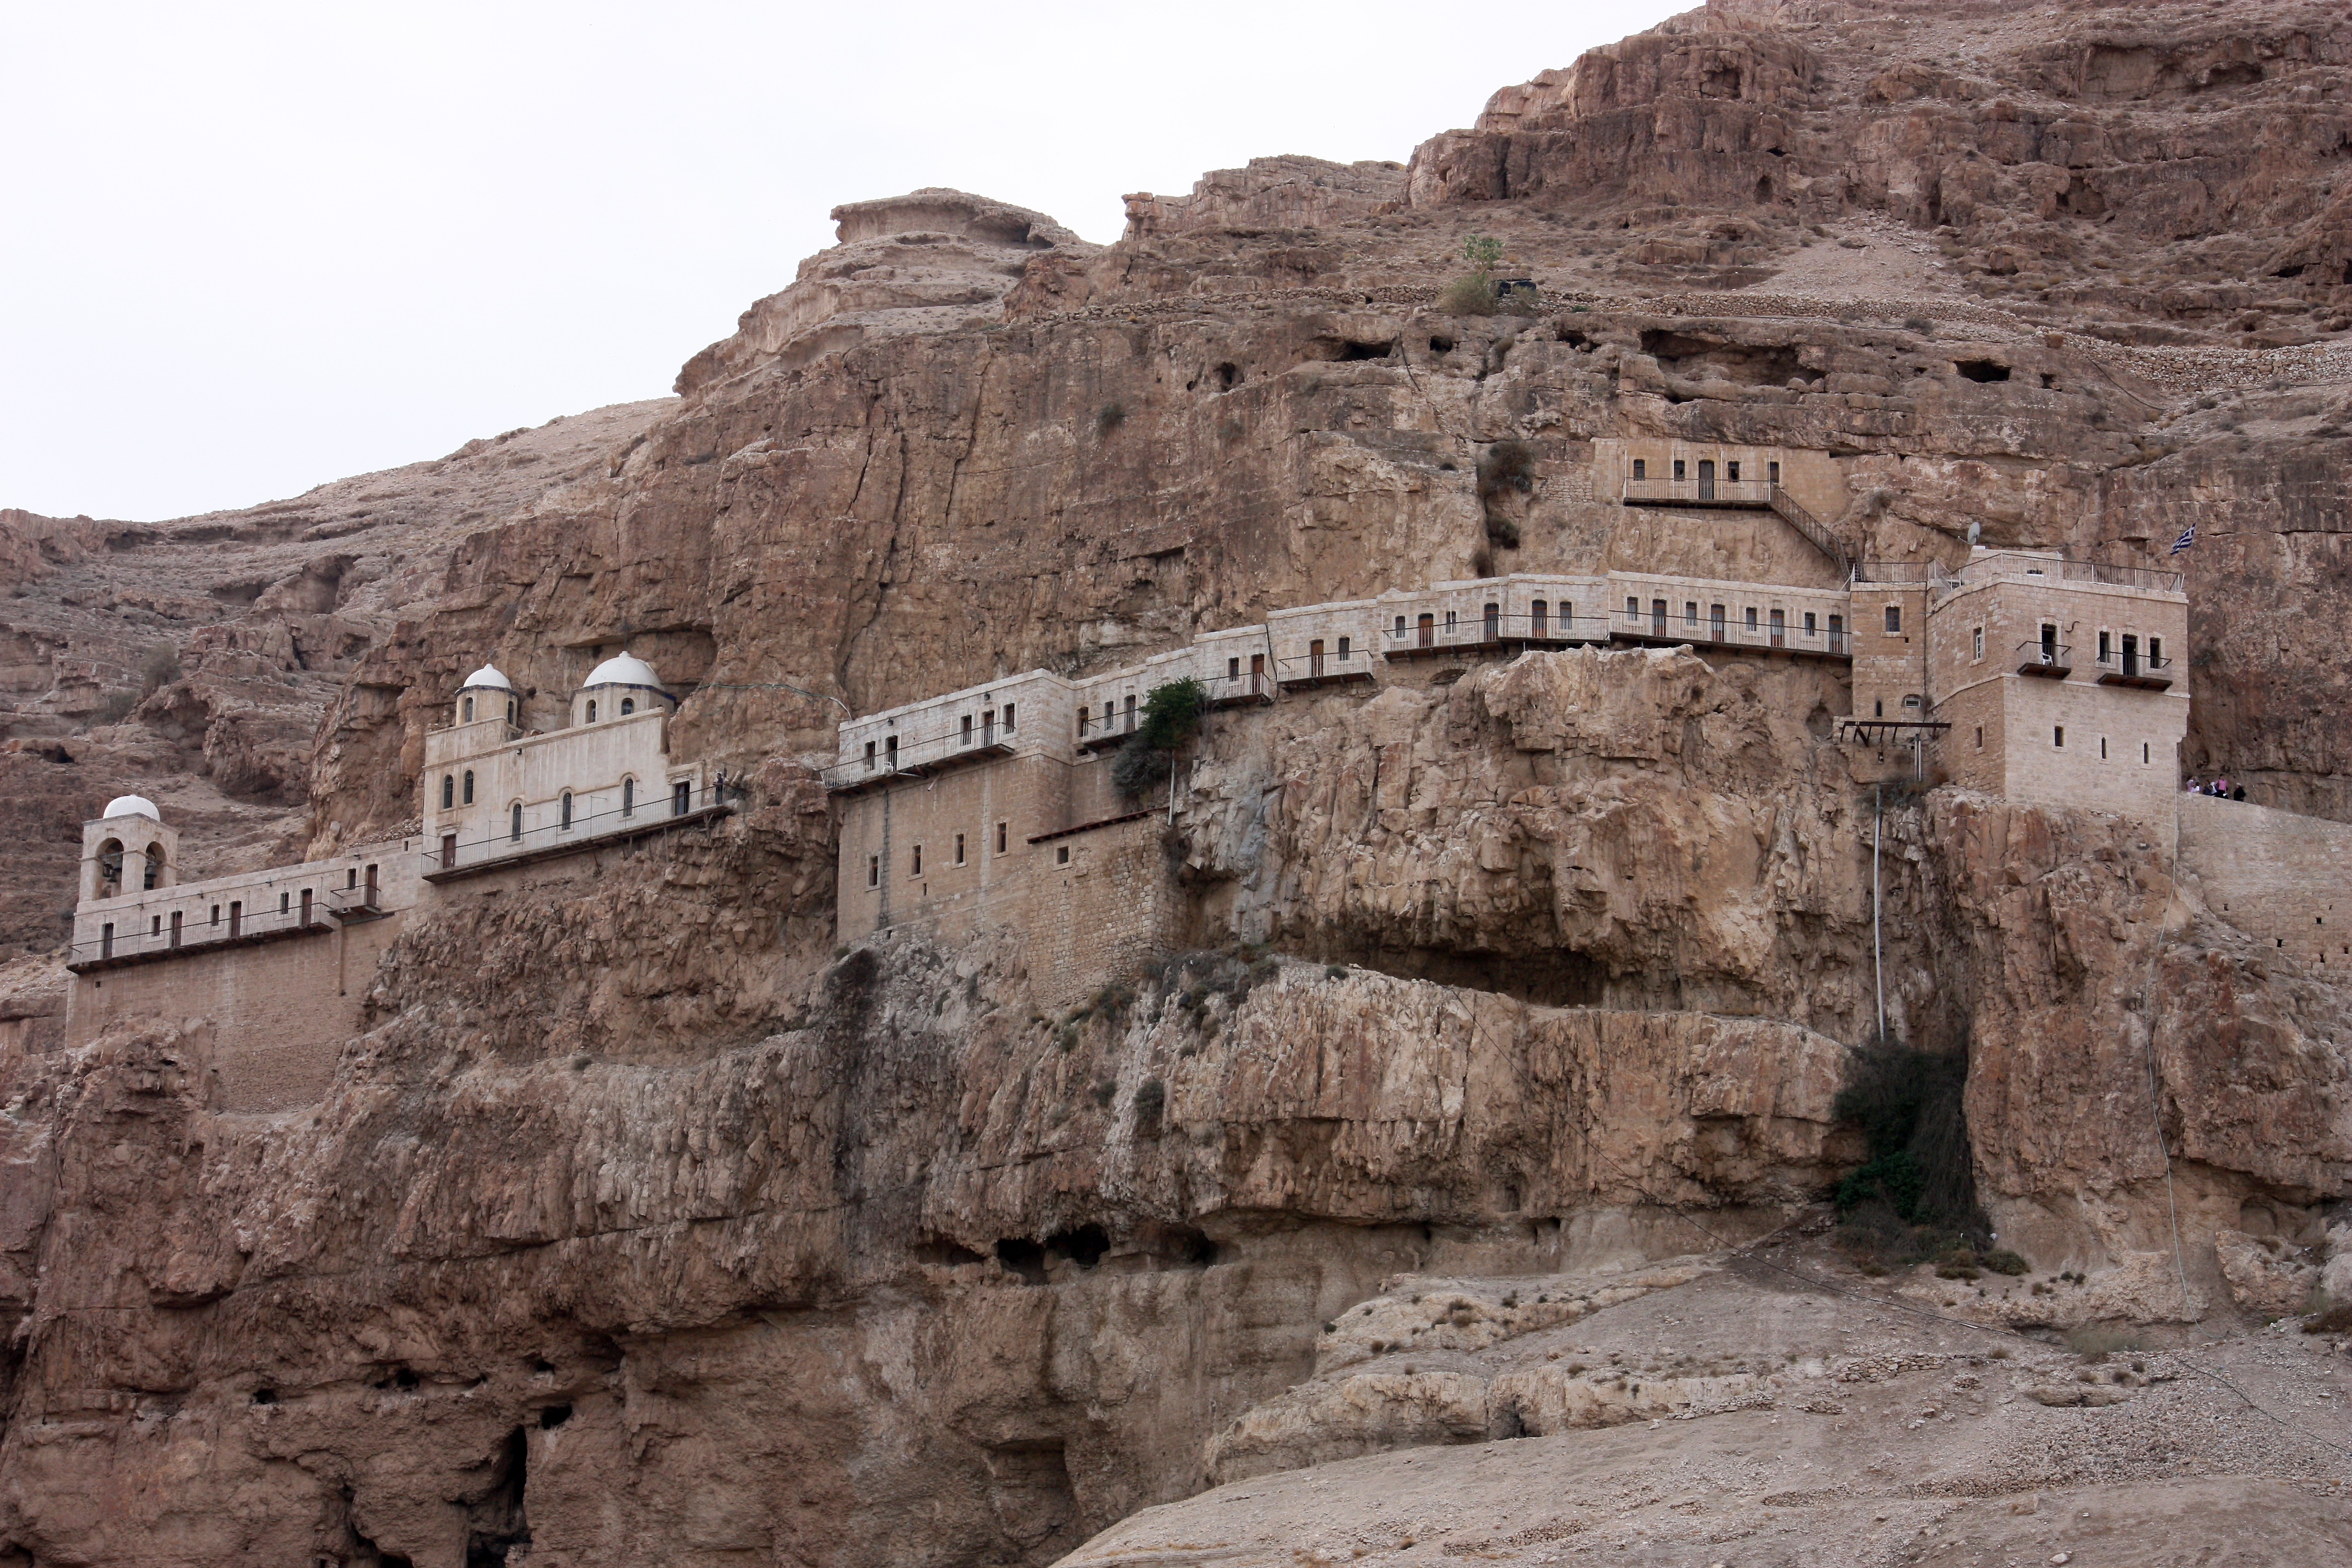 Abbot's murder in desert monastery shocks Egypt's Christians